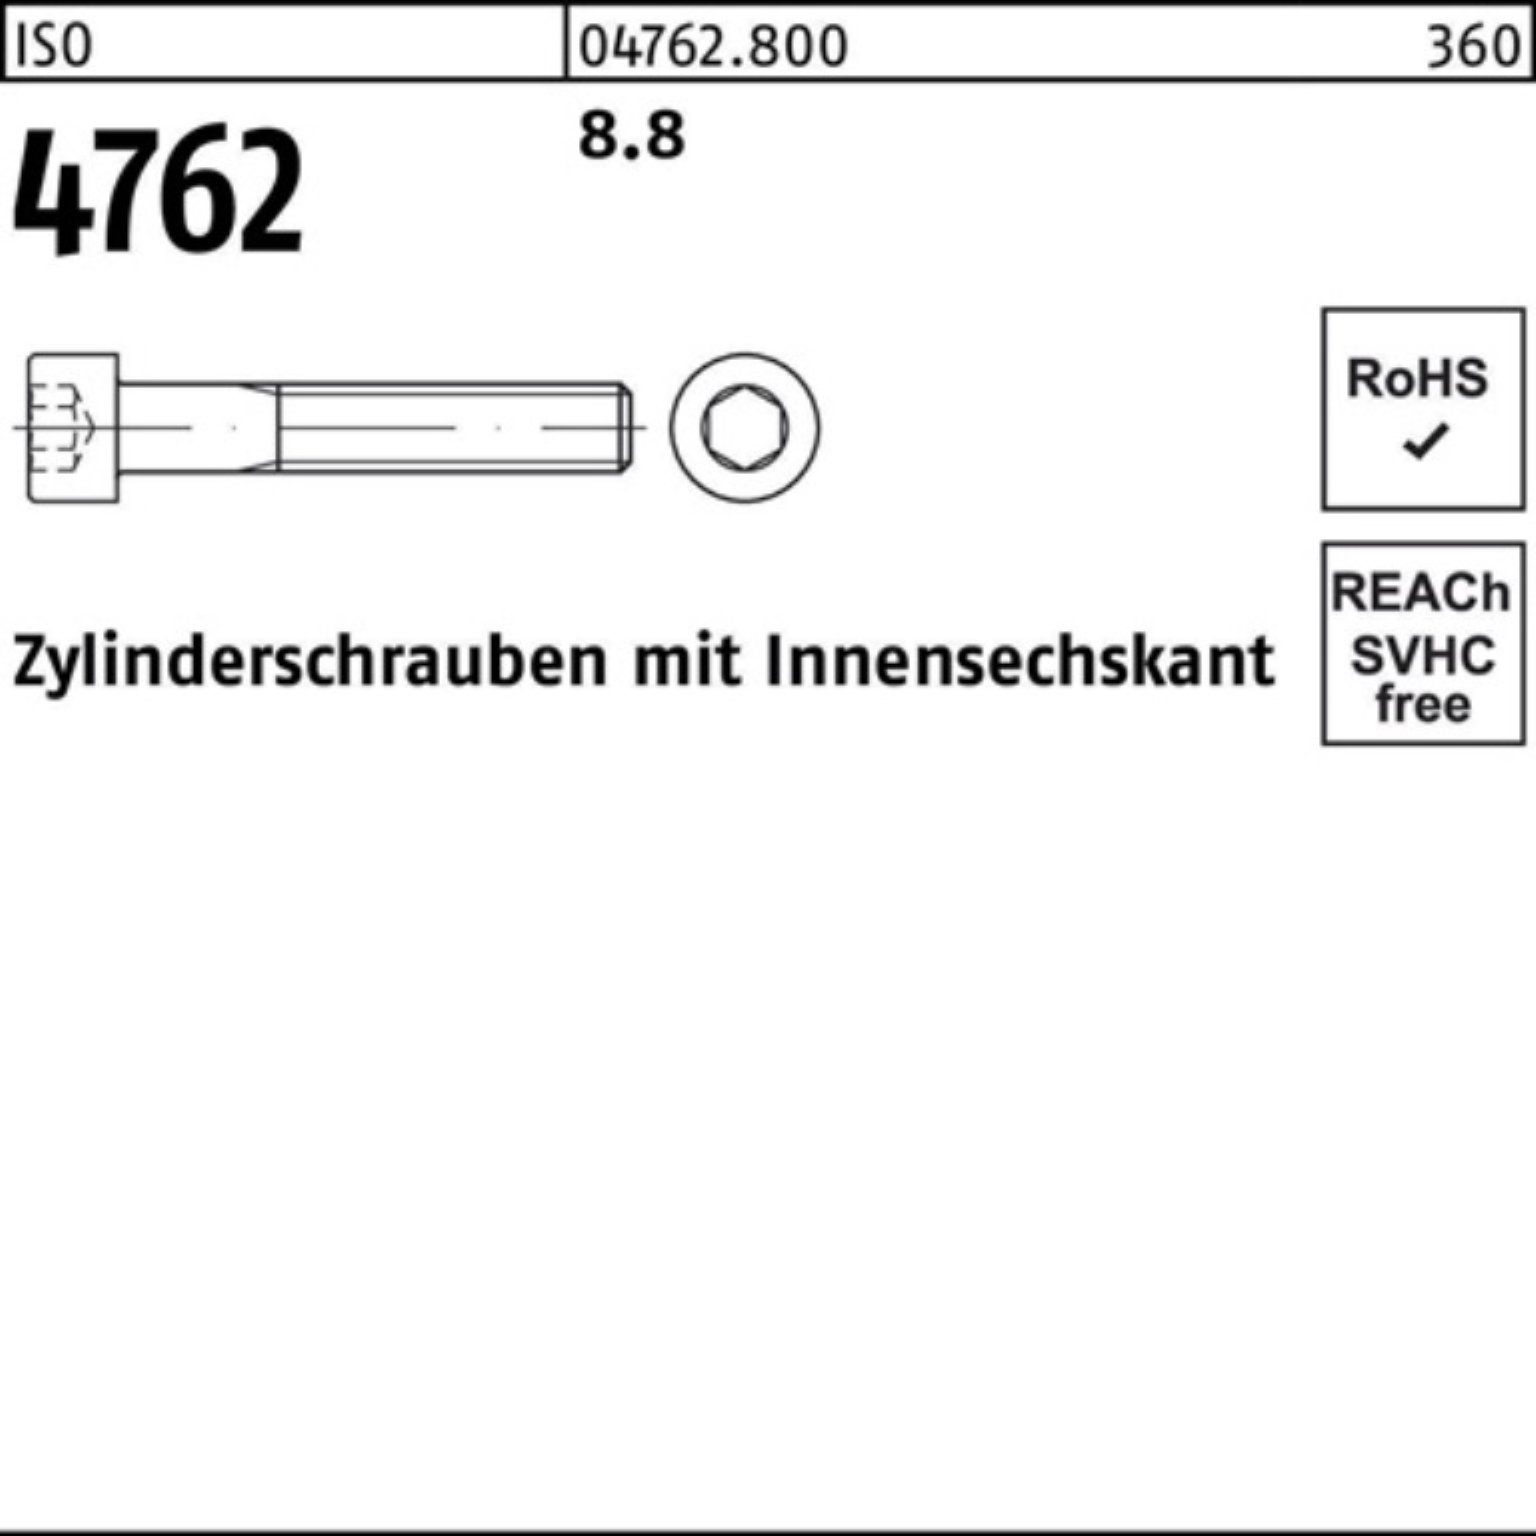 Reyher Zylinderschraube 100er Pack Zylinderschraube 1 Innen-6kt 380 4762 8.8 I M36x Stück ISO